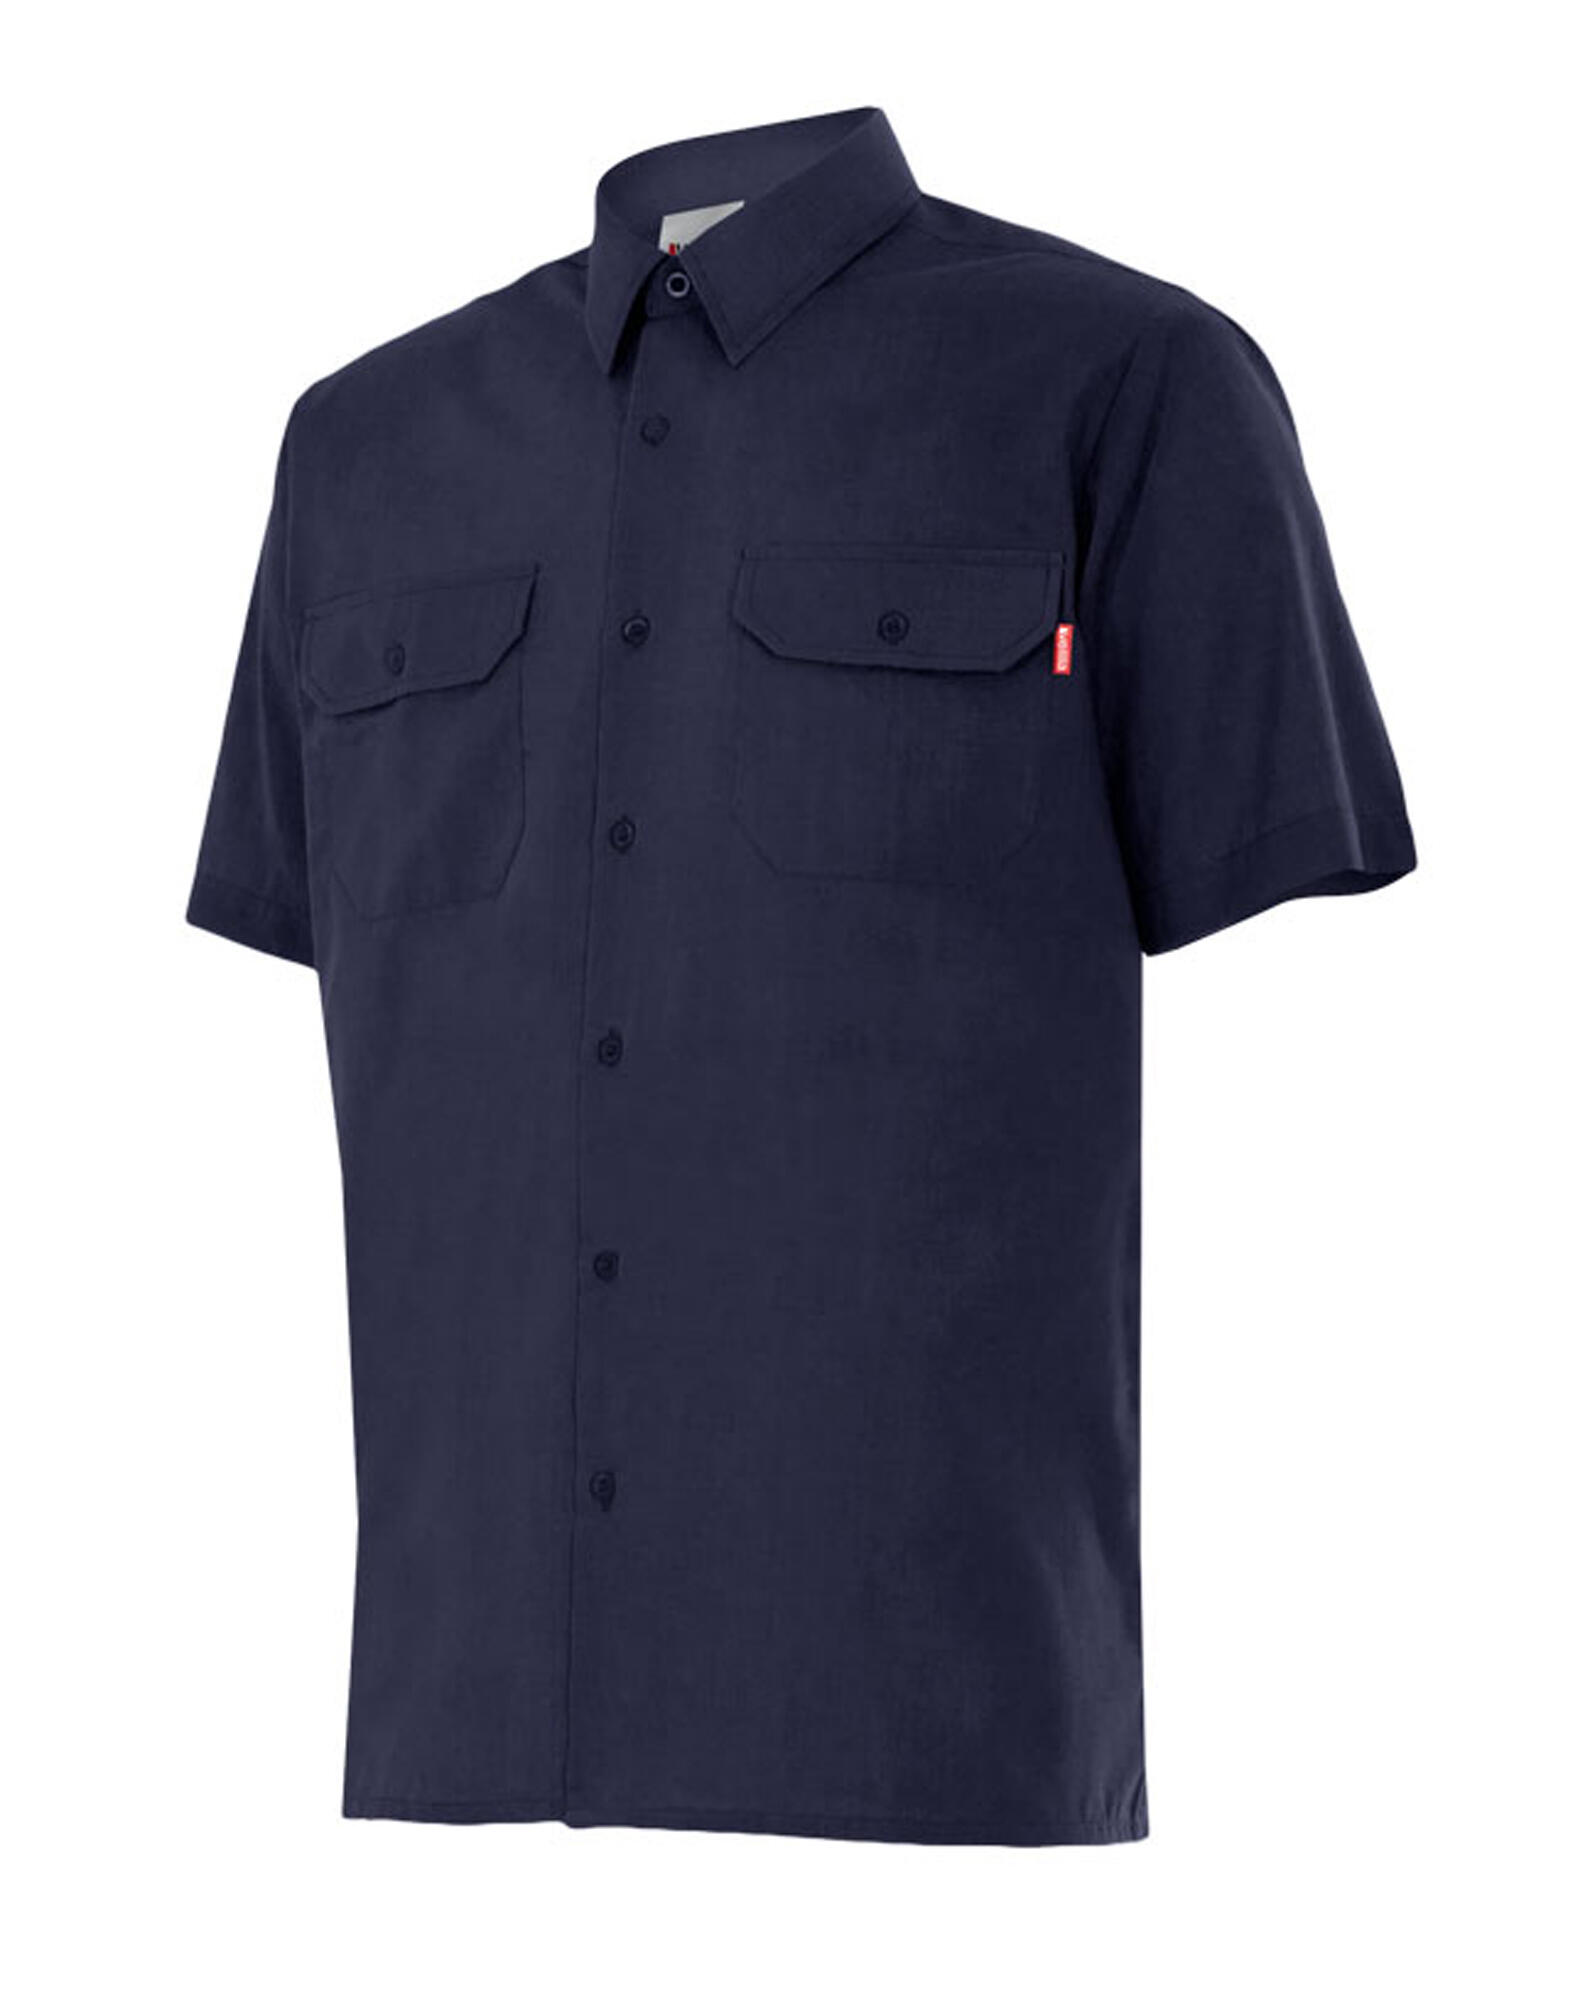 Camisa manga corta velilla 522 azul marino t3xl